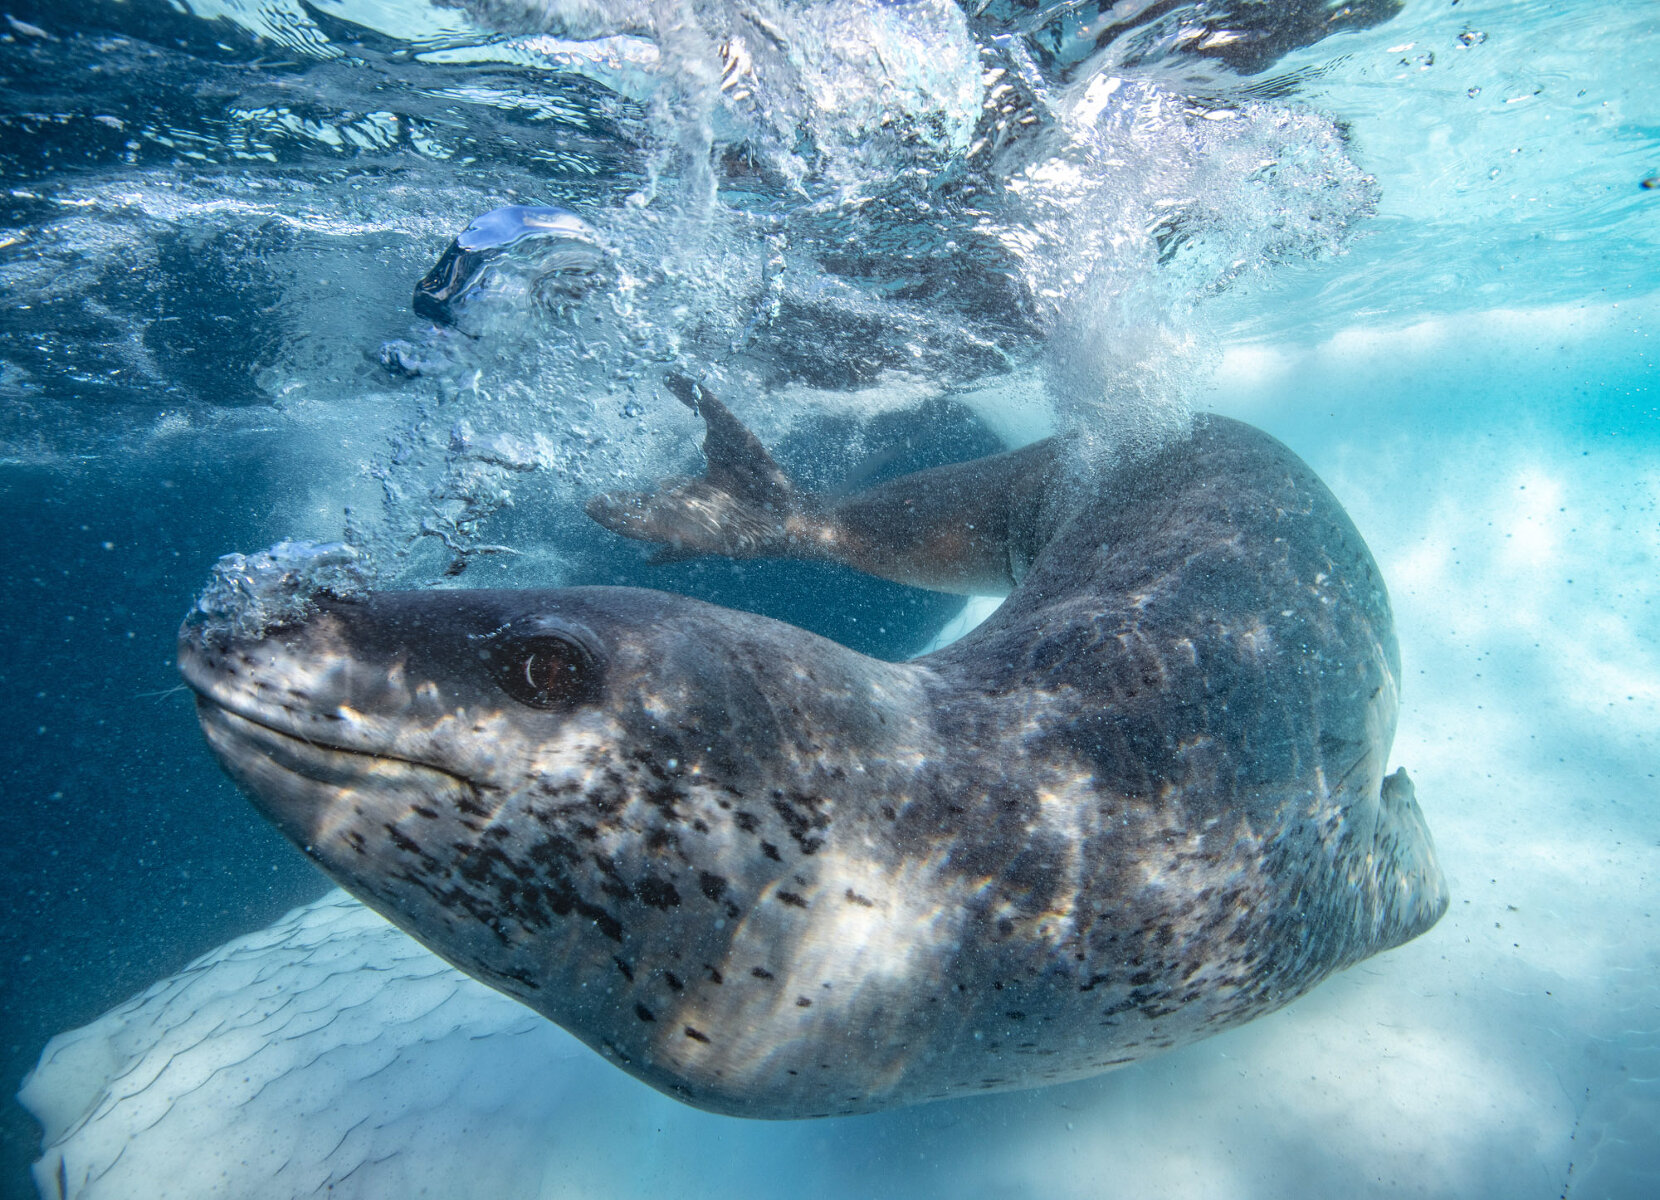 <p>Морской леопард пускает пузыри, демонстрируя любопытство и игривое настроение по отношению к фотографу. Район острова Кьюврвилль</p>